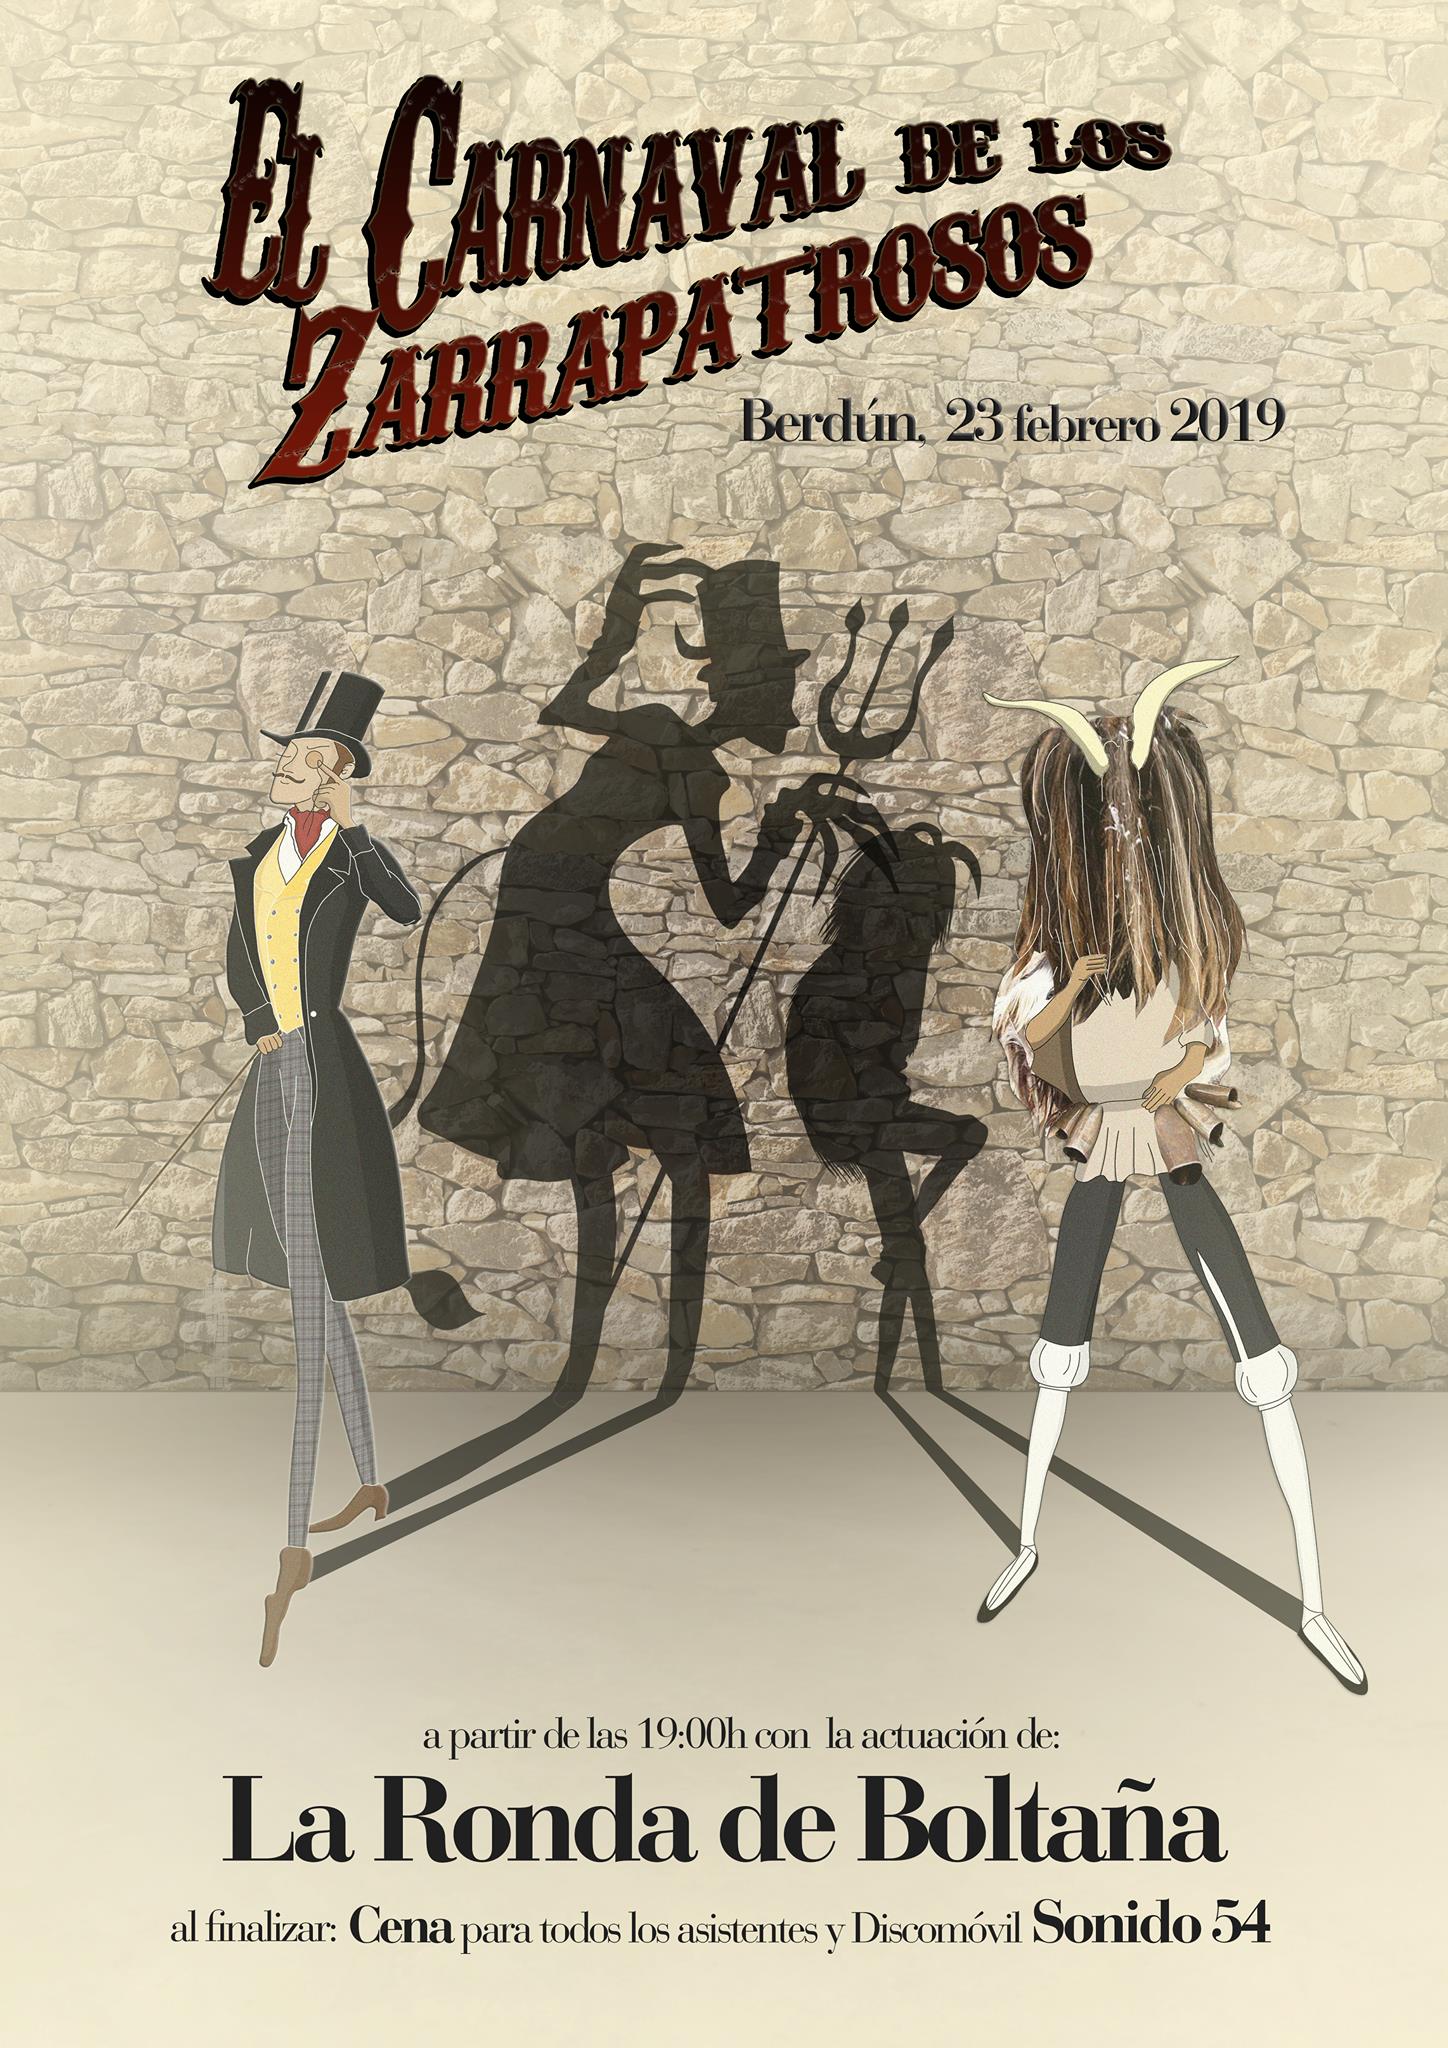 Berdn recupera el Carnaval de los Zarrapatrosos